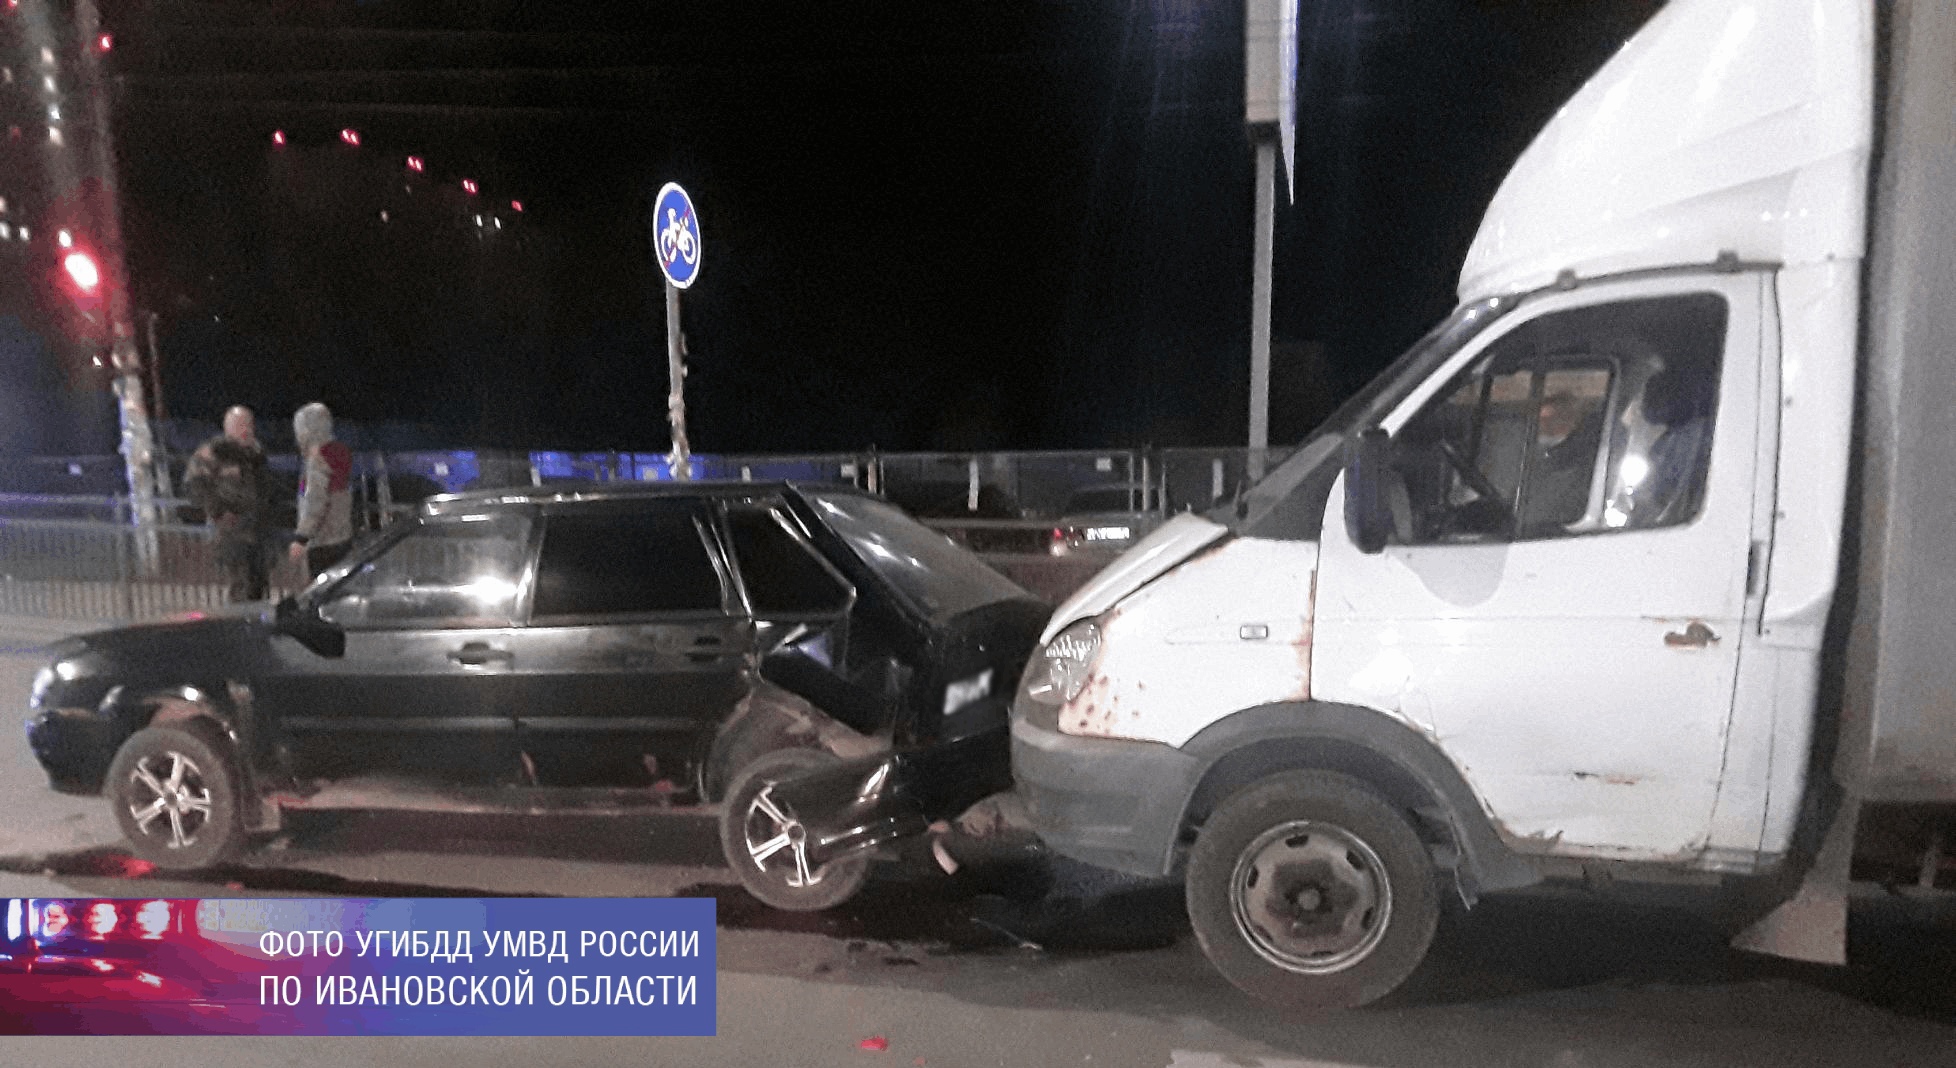 При столкновении легковушки и грузовика в Иванове пострадали 2 человека